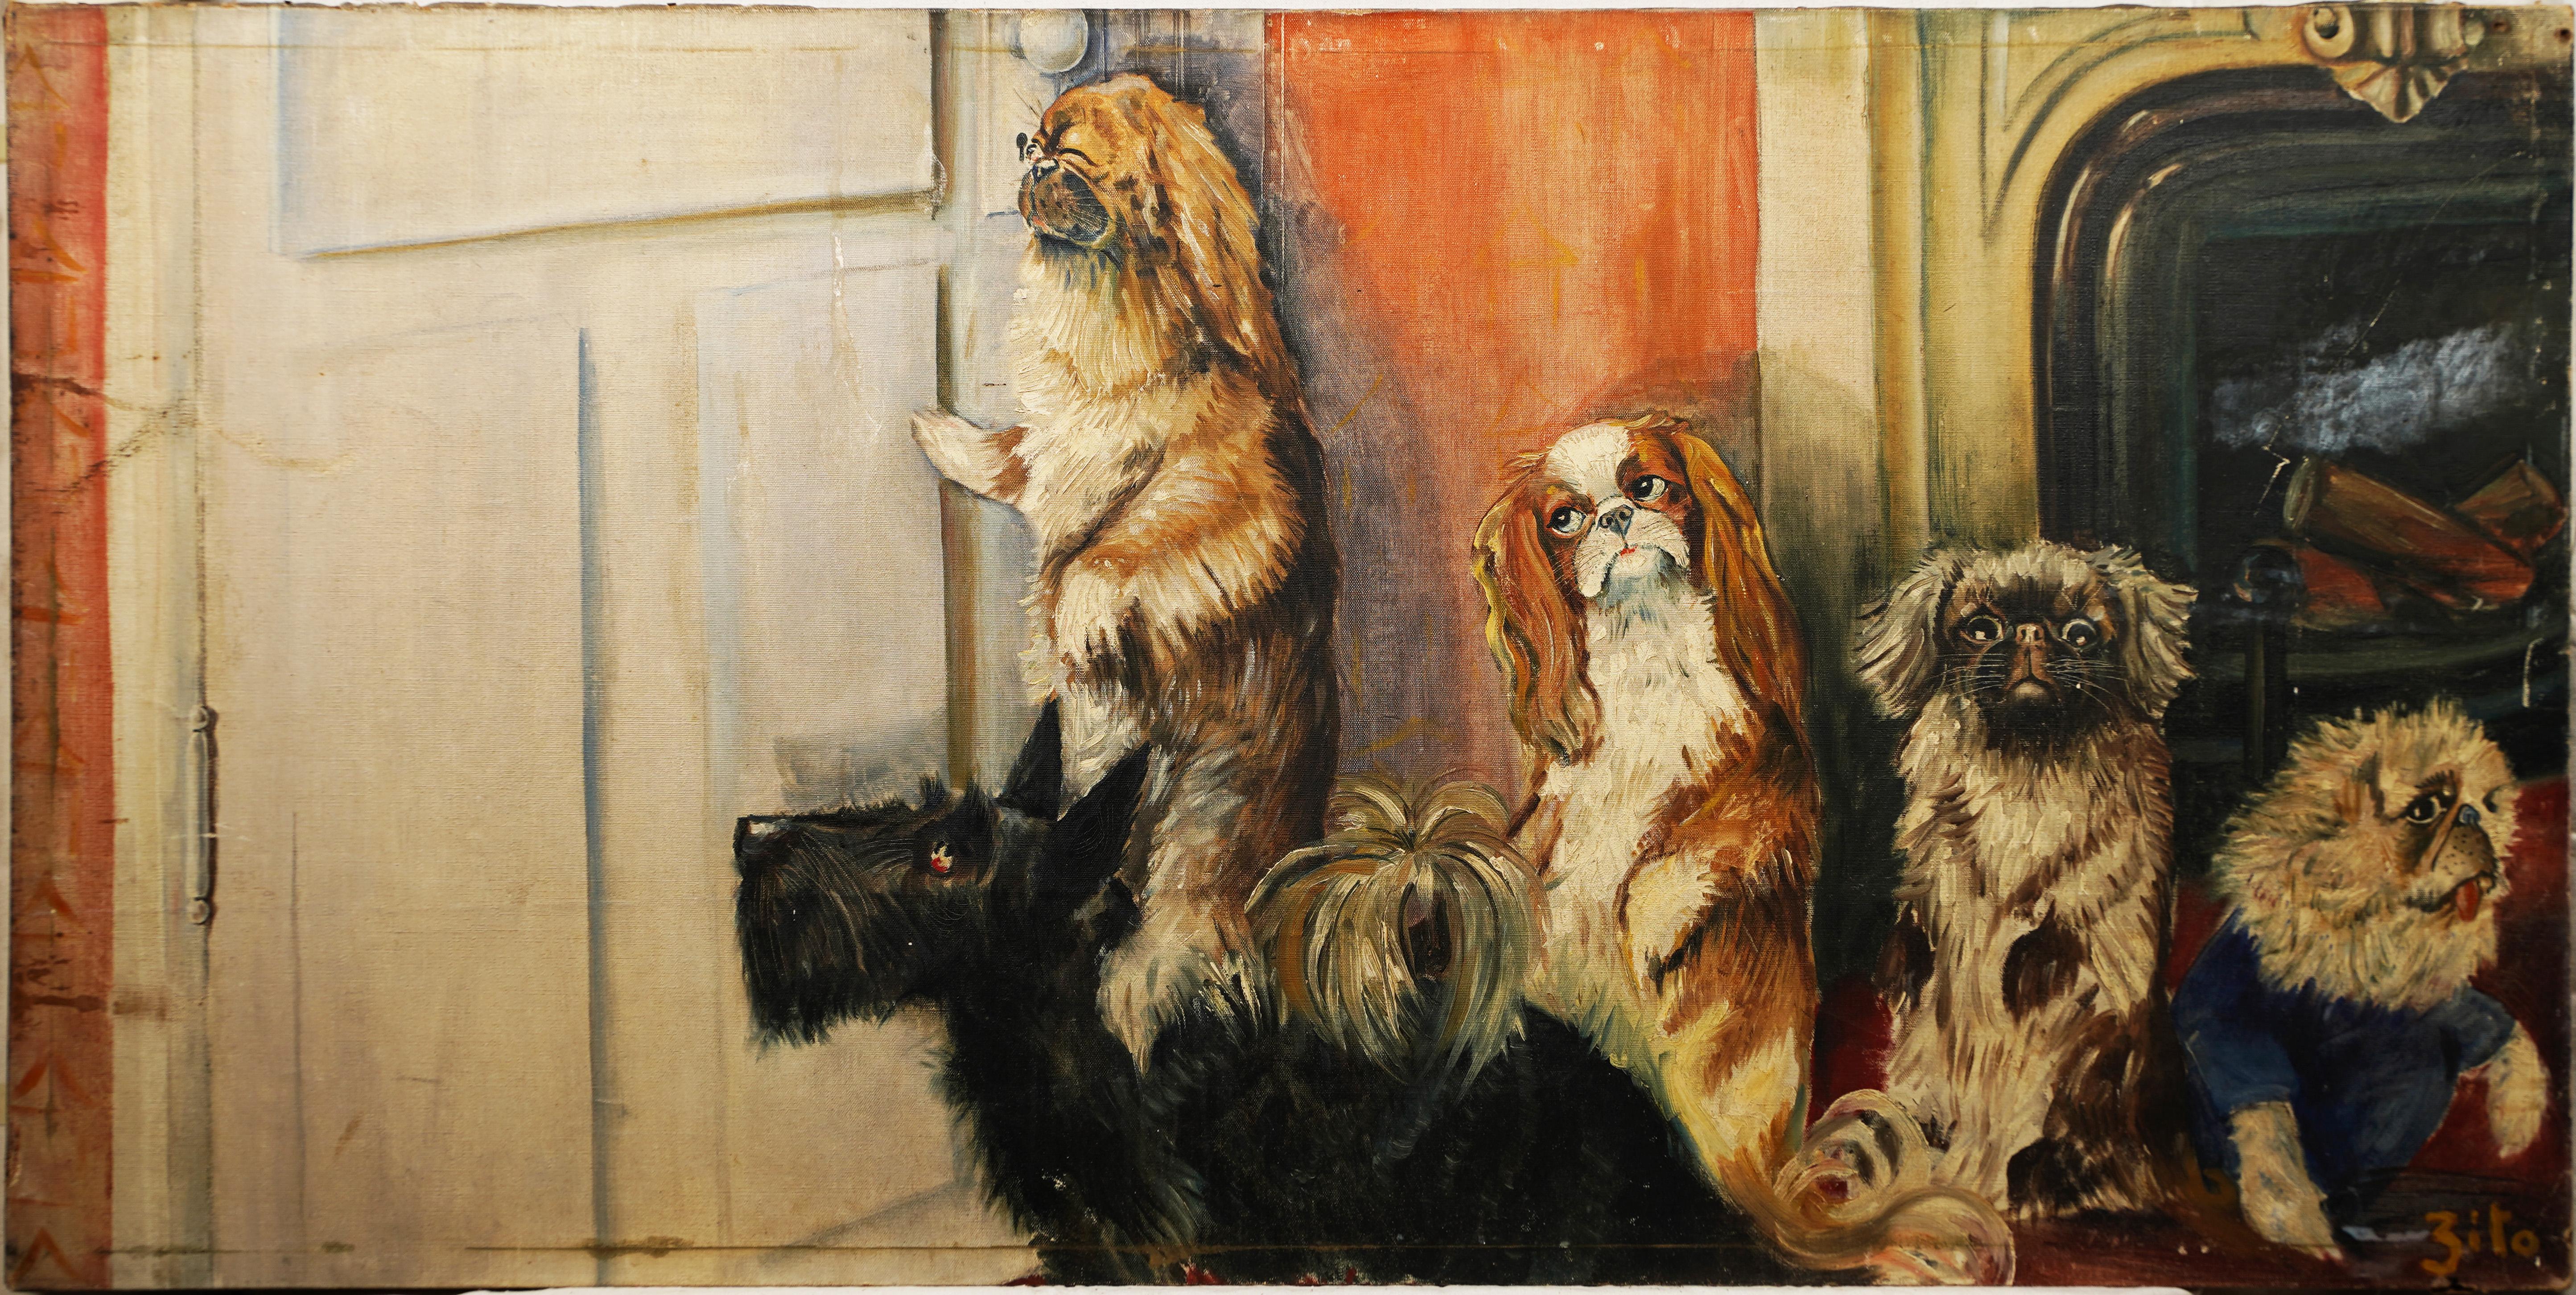 Interior Painting Unknown - Grand portrait ancien de chien d'art populaire américain « Peep Hole », peinture à l'huile intérieure